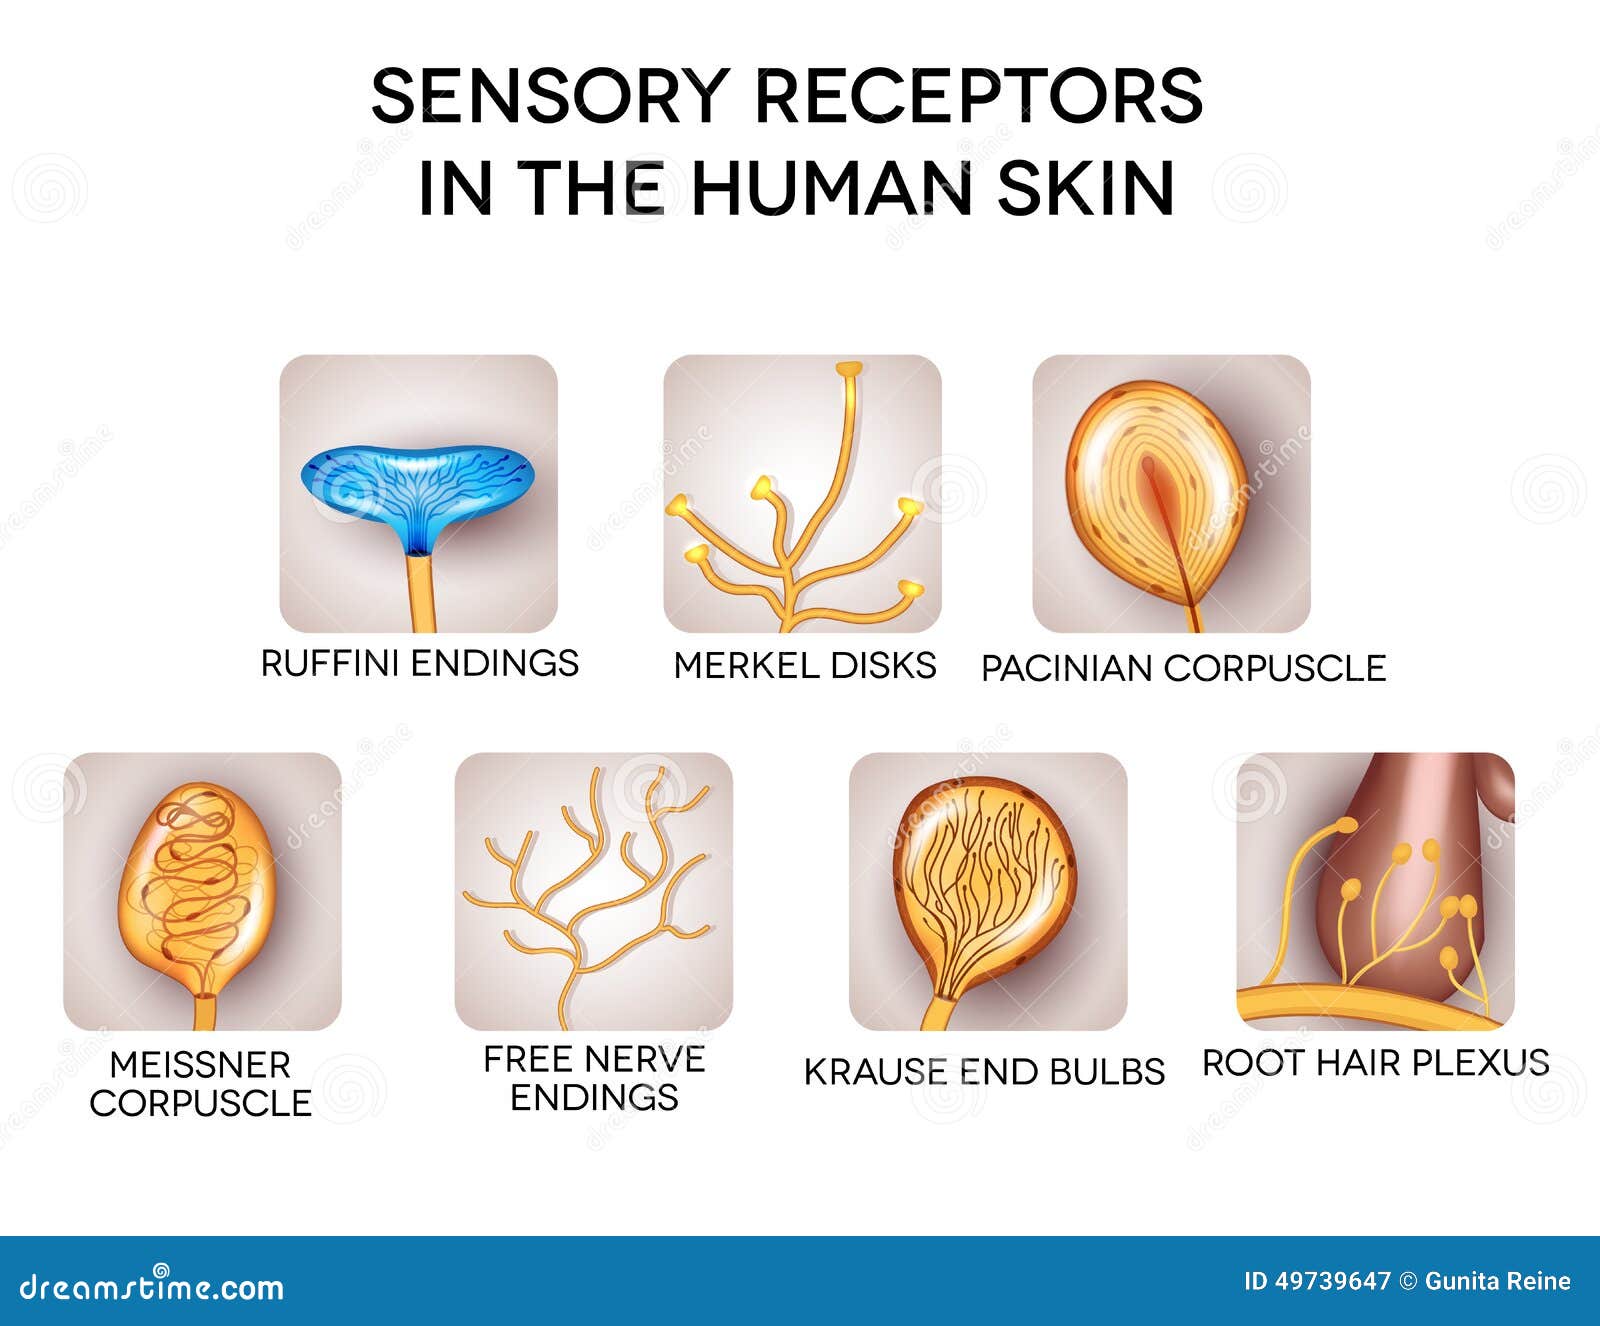 sensory receptors in the human skin